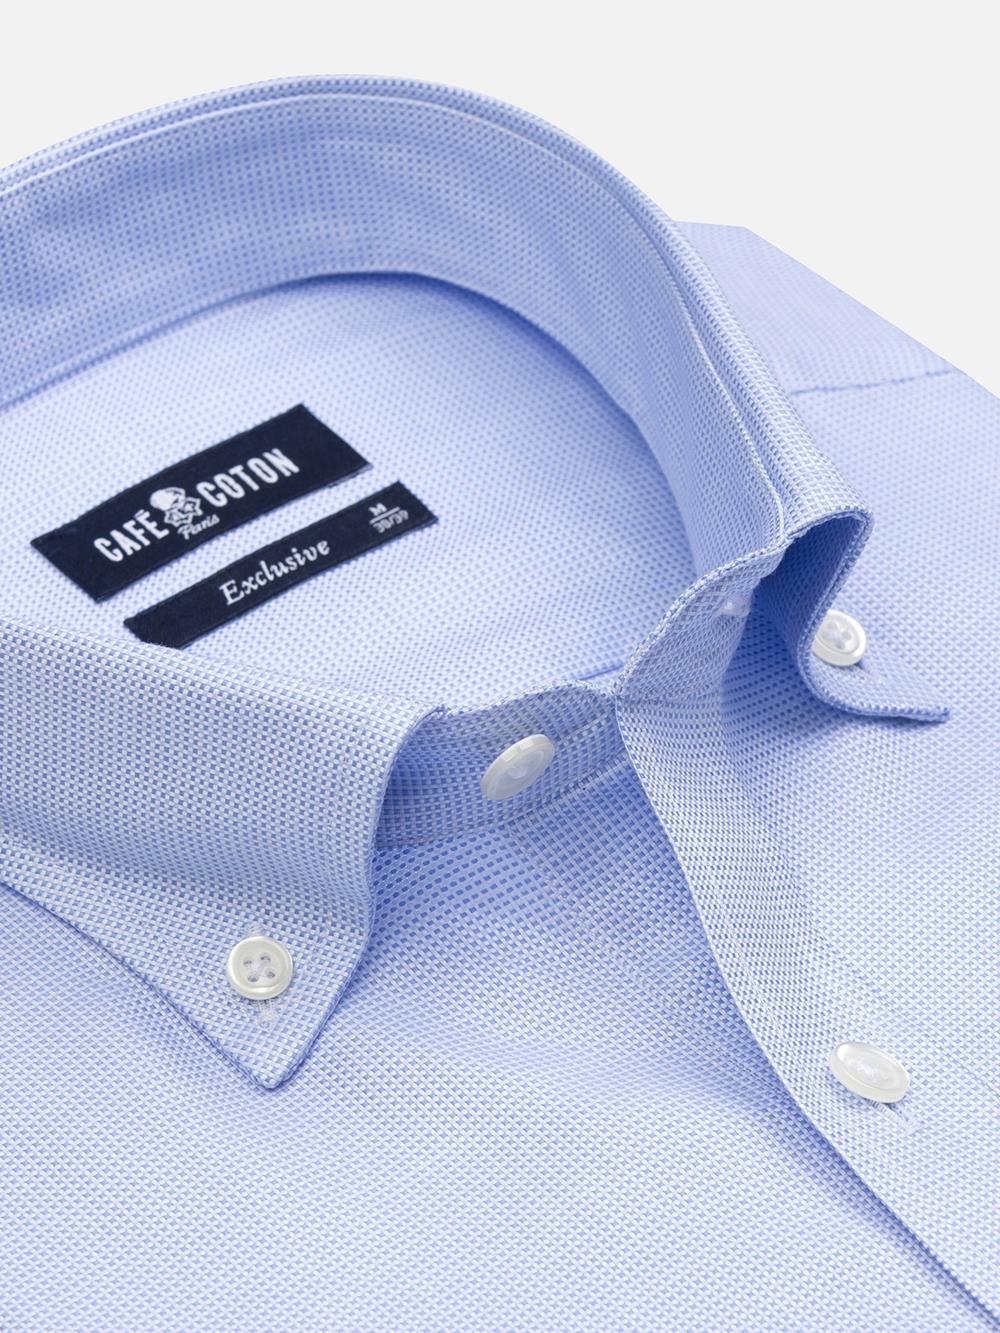 Hemd aus himmelblauem Zopfmuster - Buttondown Kragen